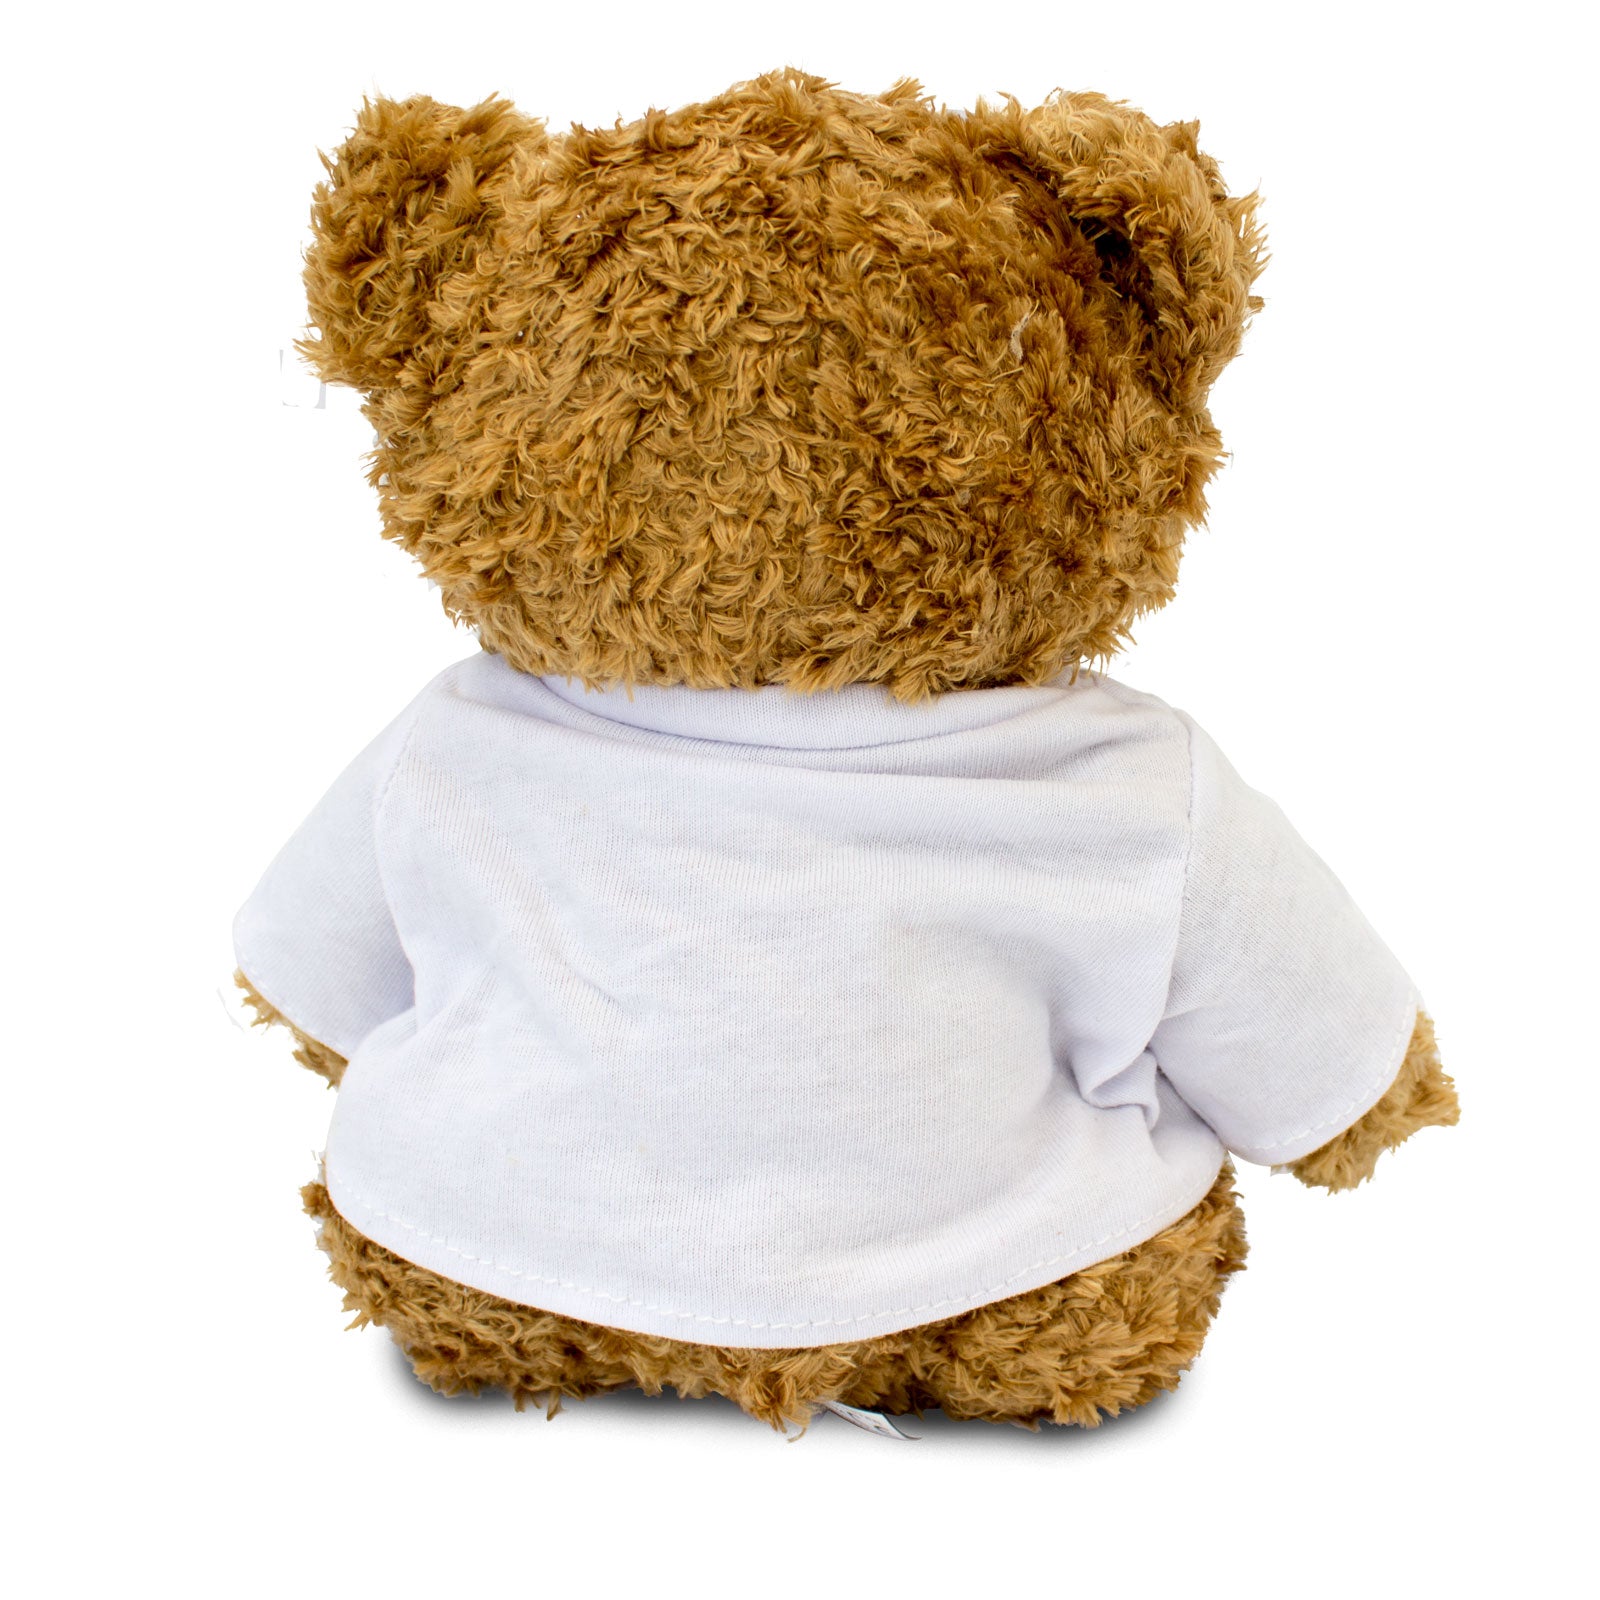 Get Well Soon Isabelle - Teddy Bear